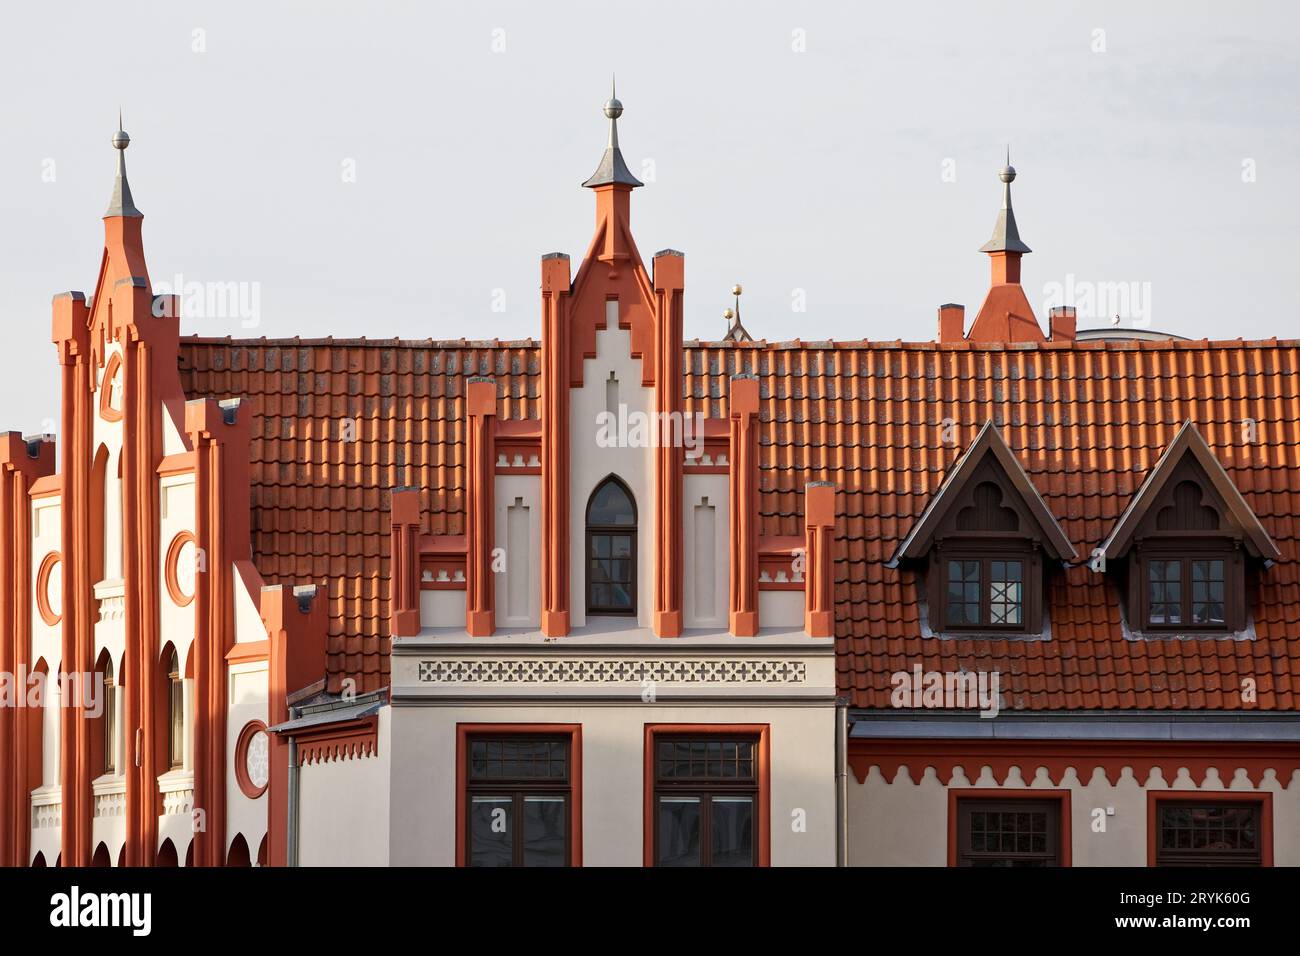 Giebelfassade am Markt, Hansestadt Wismar, Mecklenburg-Vorpommern, Deutschland, Europa Stockfoto